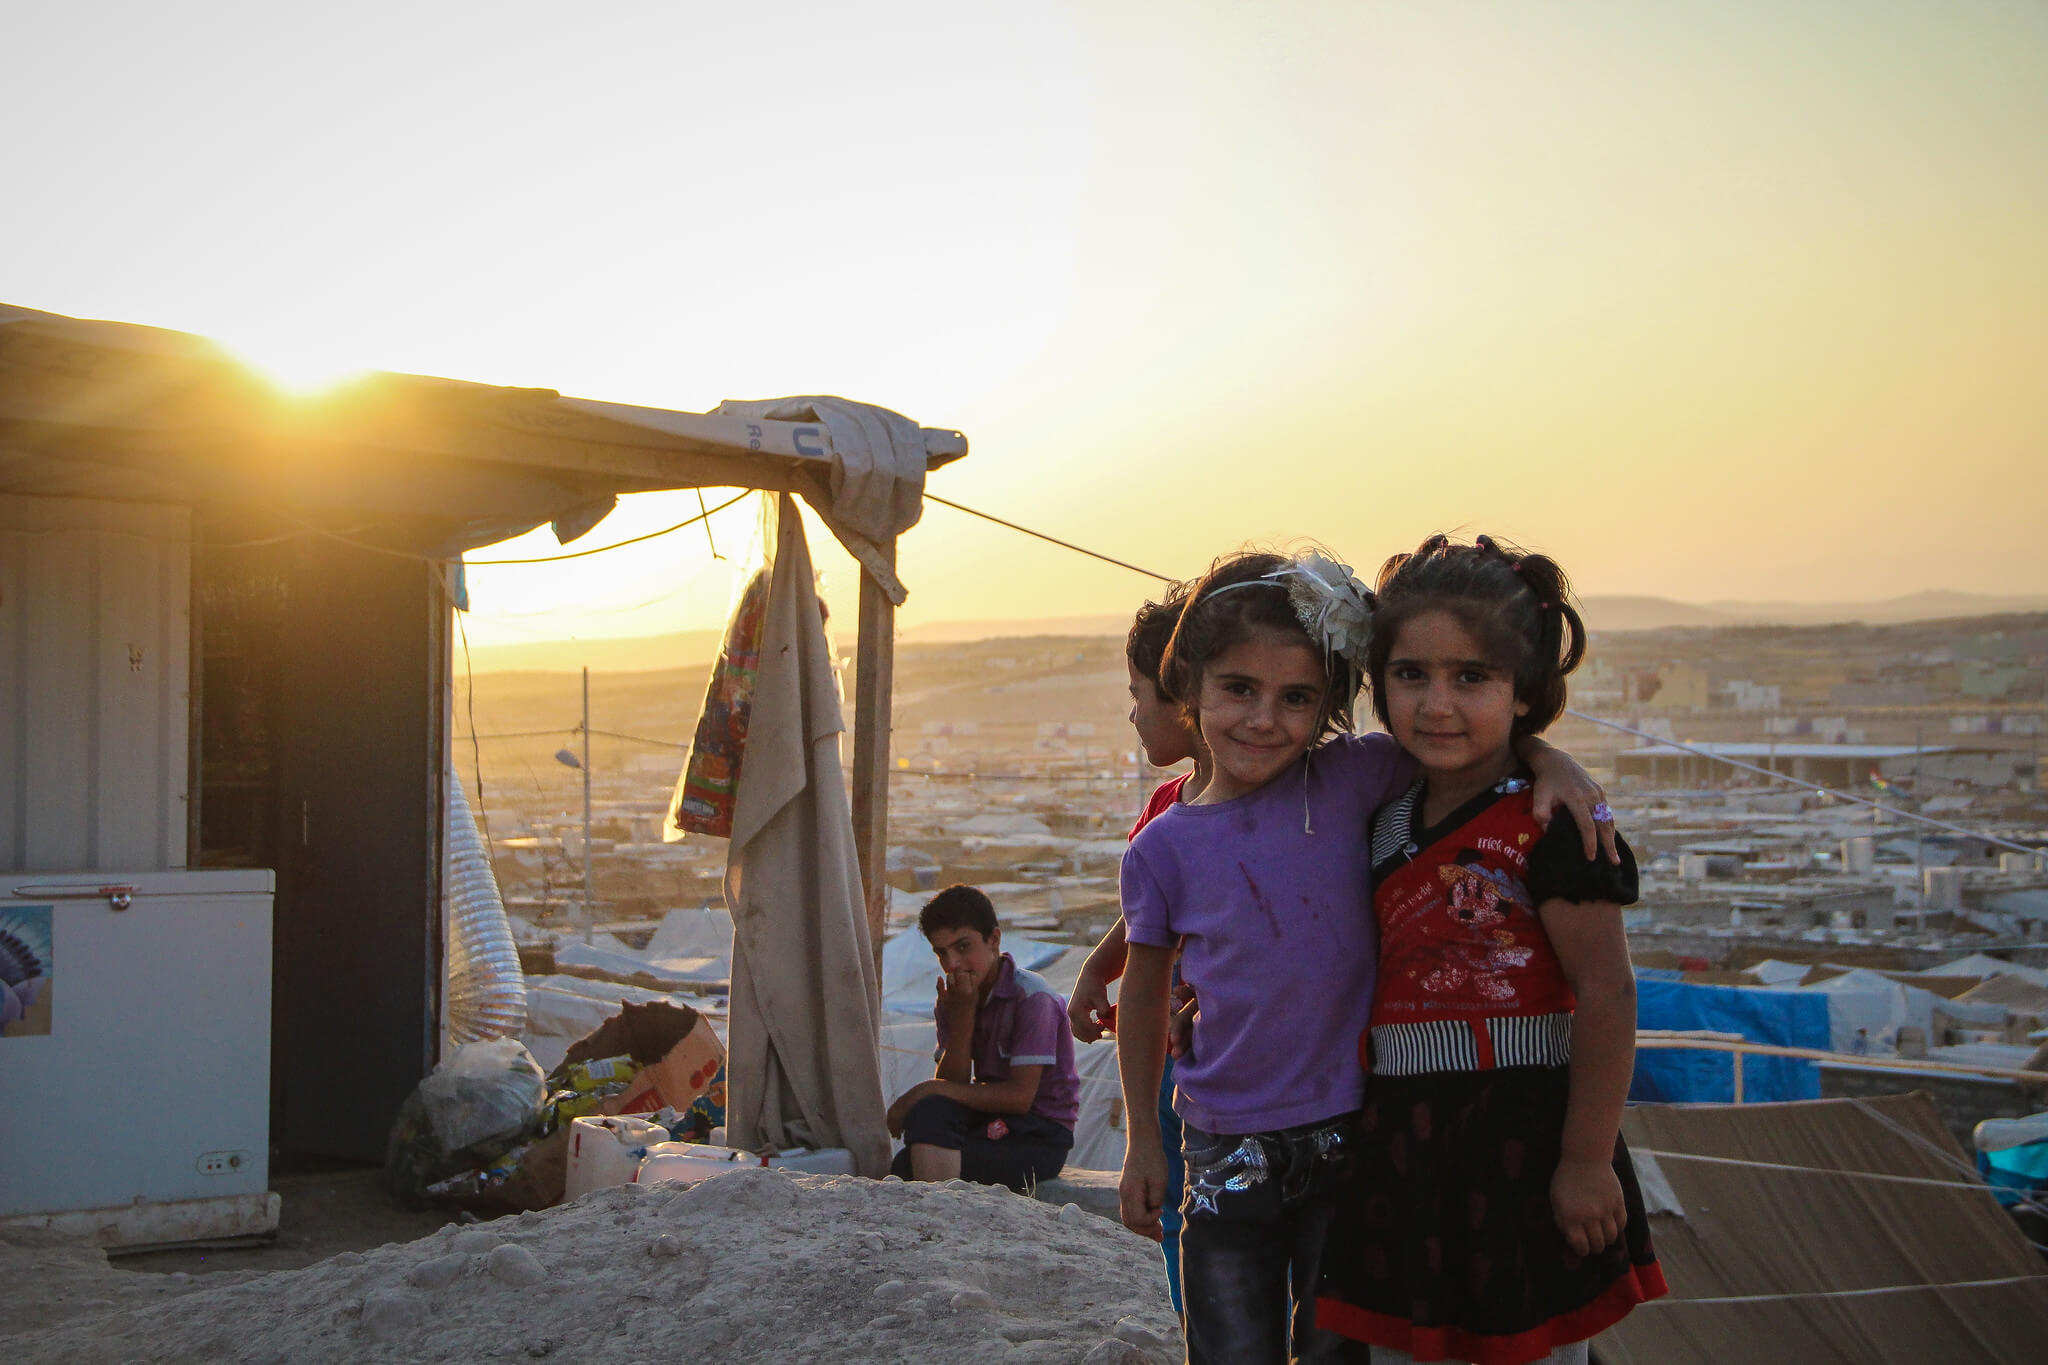 Streefkerk-Syrische vluchtelingen in het Iraakse vluchtelingenkamp Domiz in 2013. EU Civil Protection and Humanitarian Aid